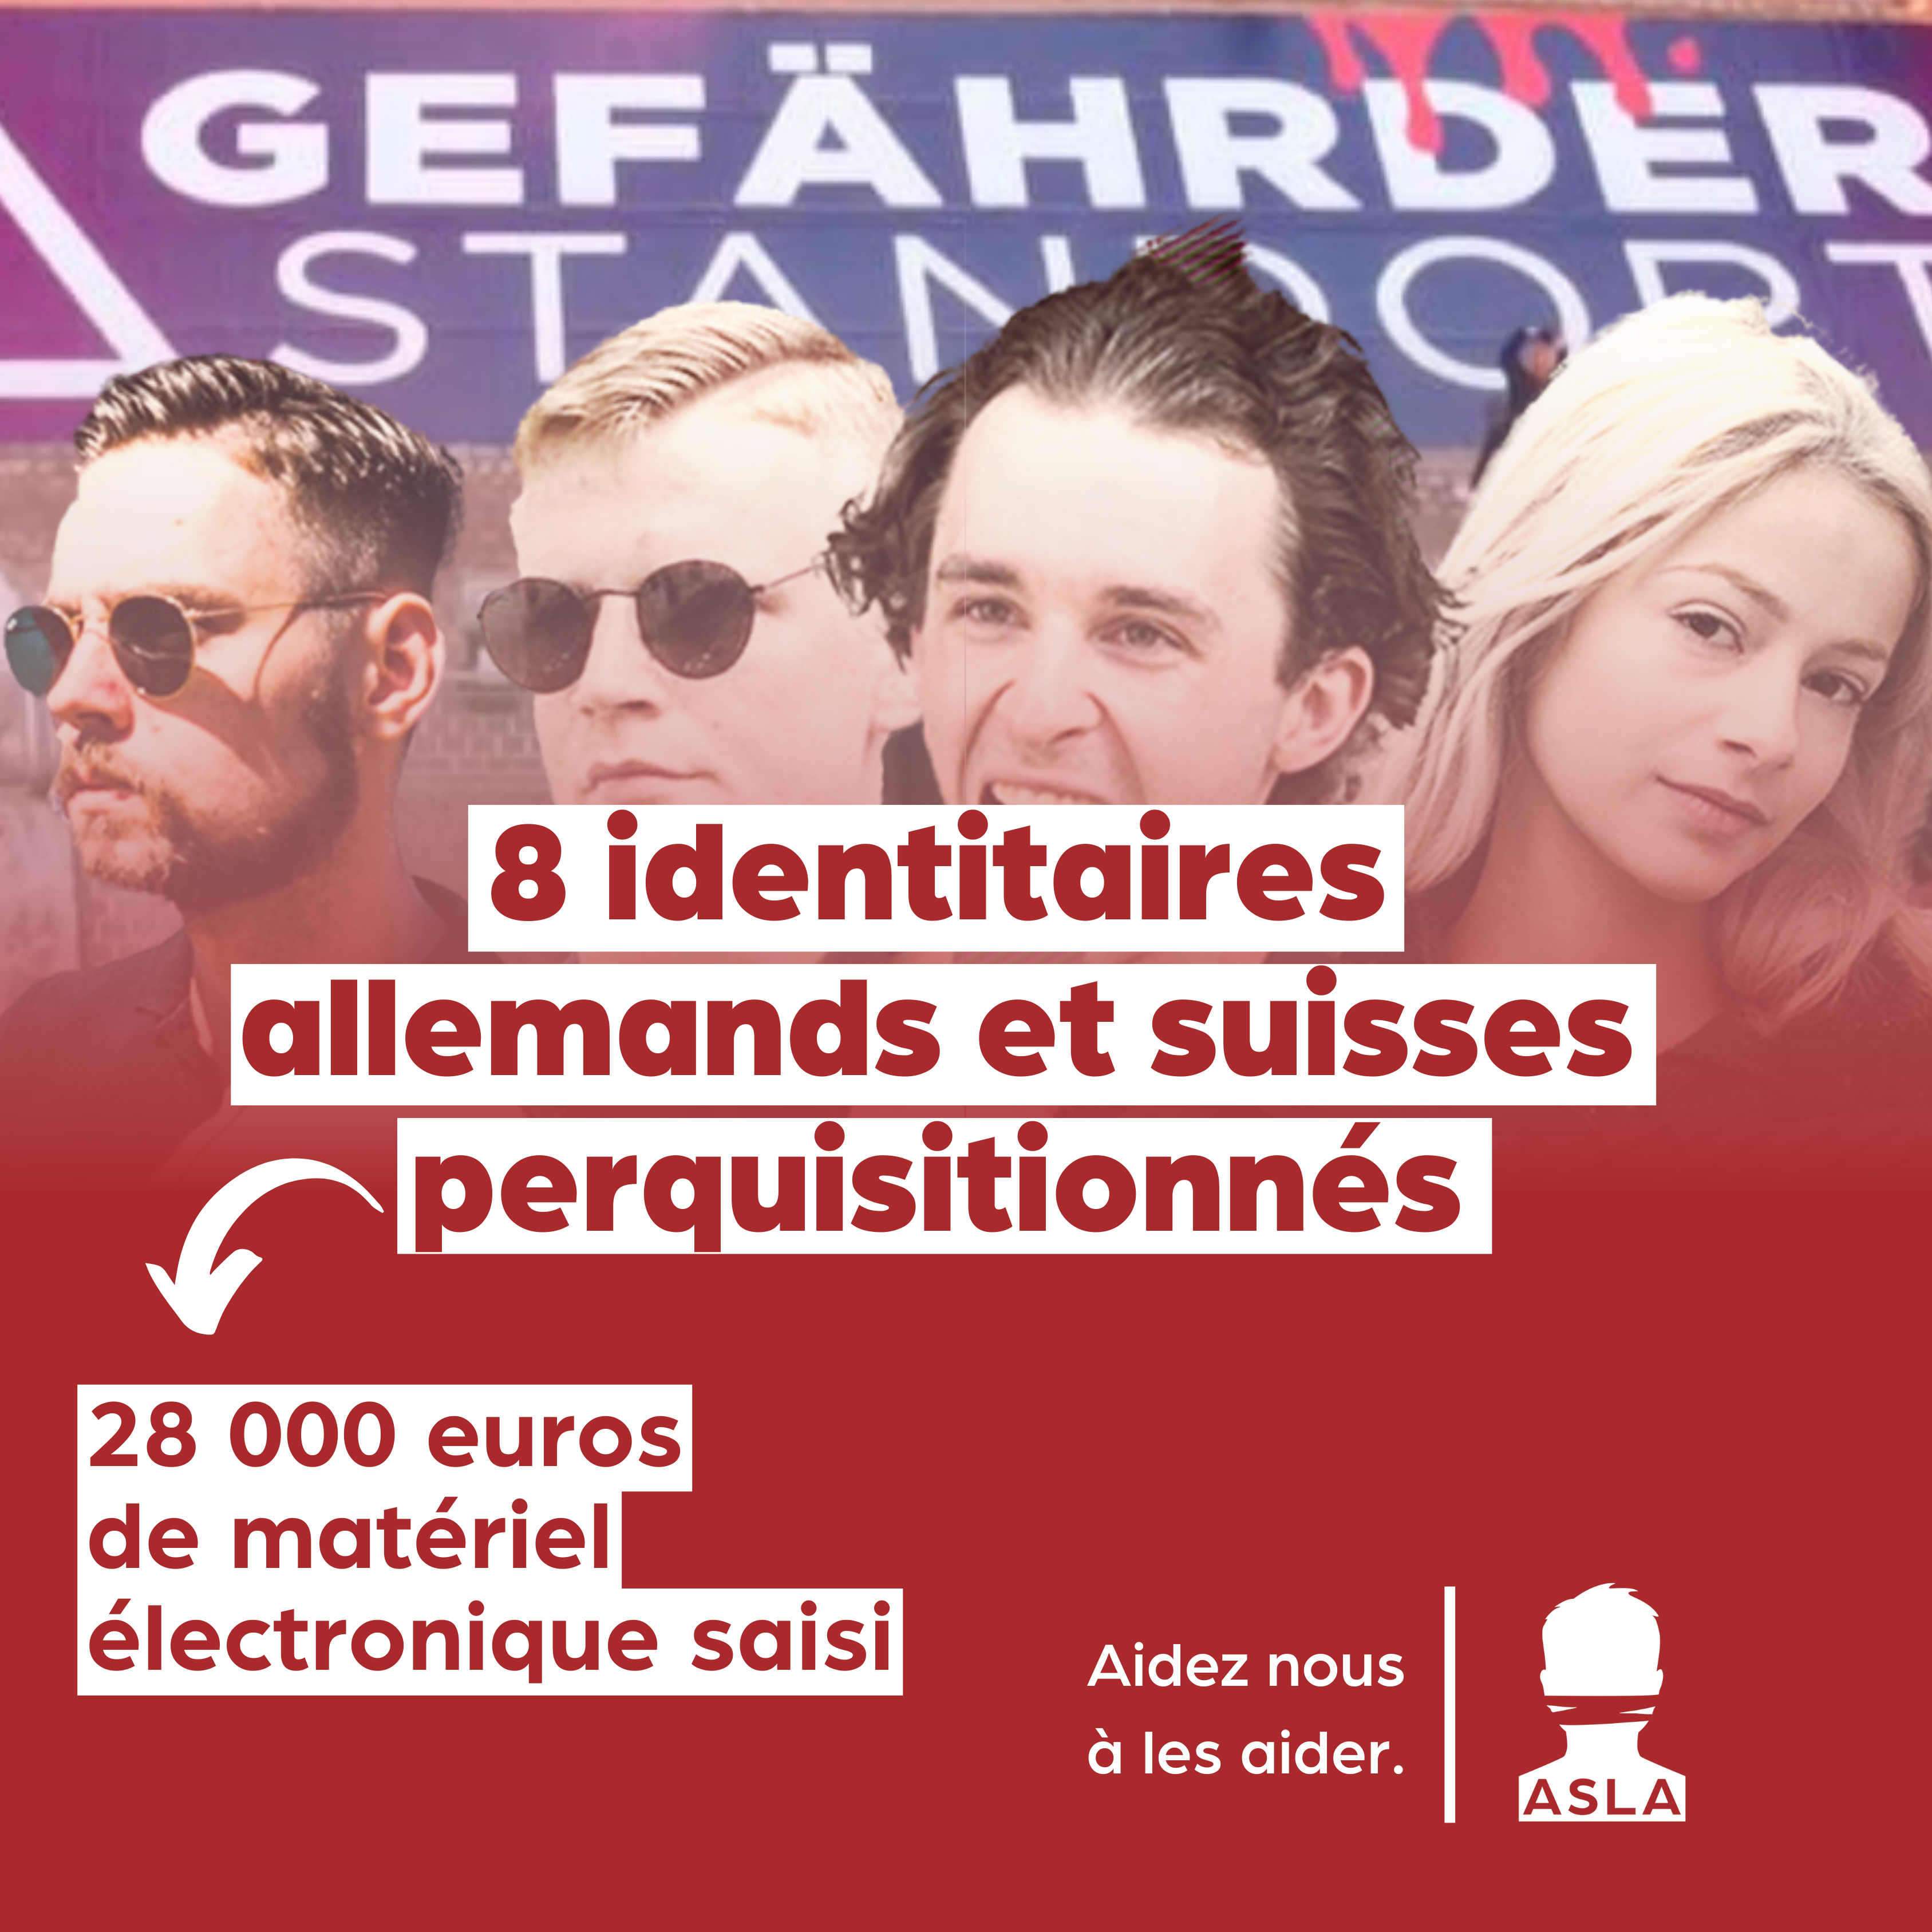 Soutenez les jeunes identitaires allemands et suisses perquisitionnés pour une banderole !